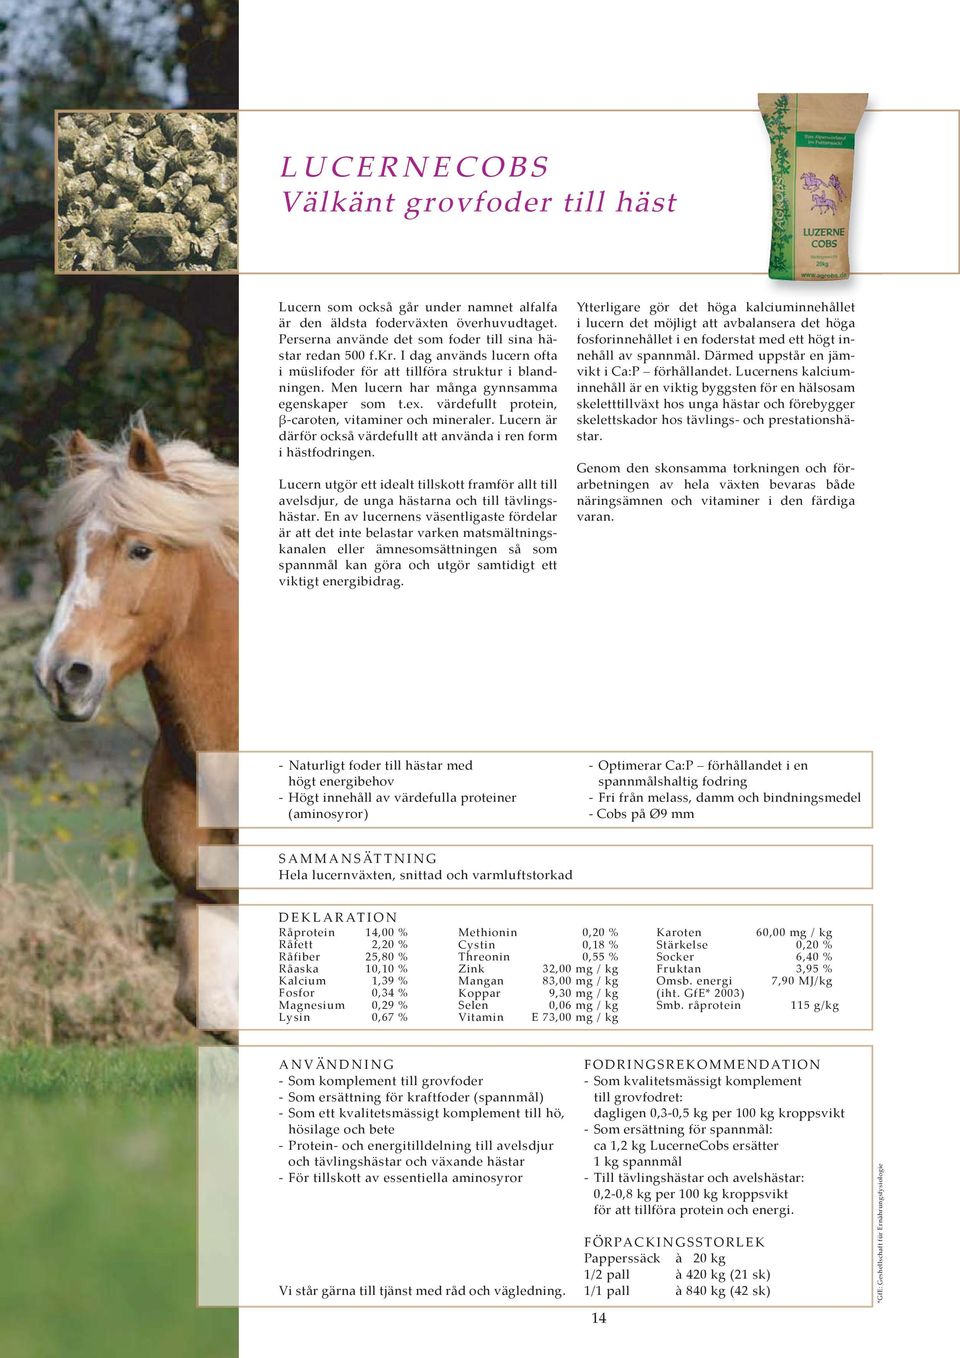 Lucern är därför också värdefullt att använda i ren form i hästfodringen. Lucern utgör ett idealt tillskott framför allt till avelsdjur, de unga hästarna och till tävlingshästar.